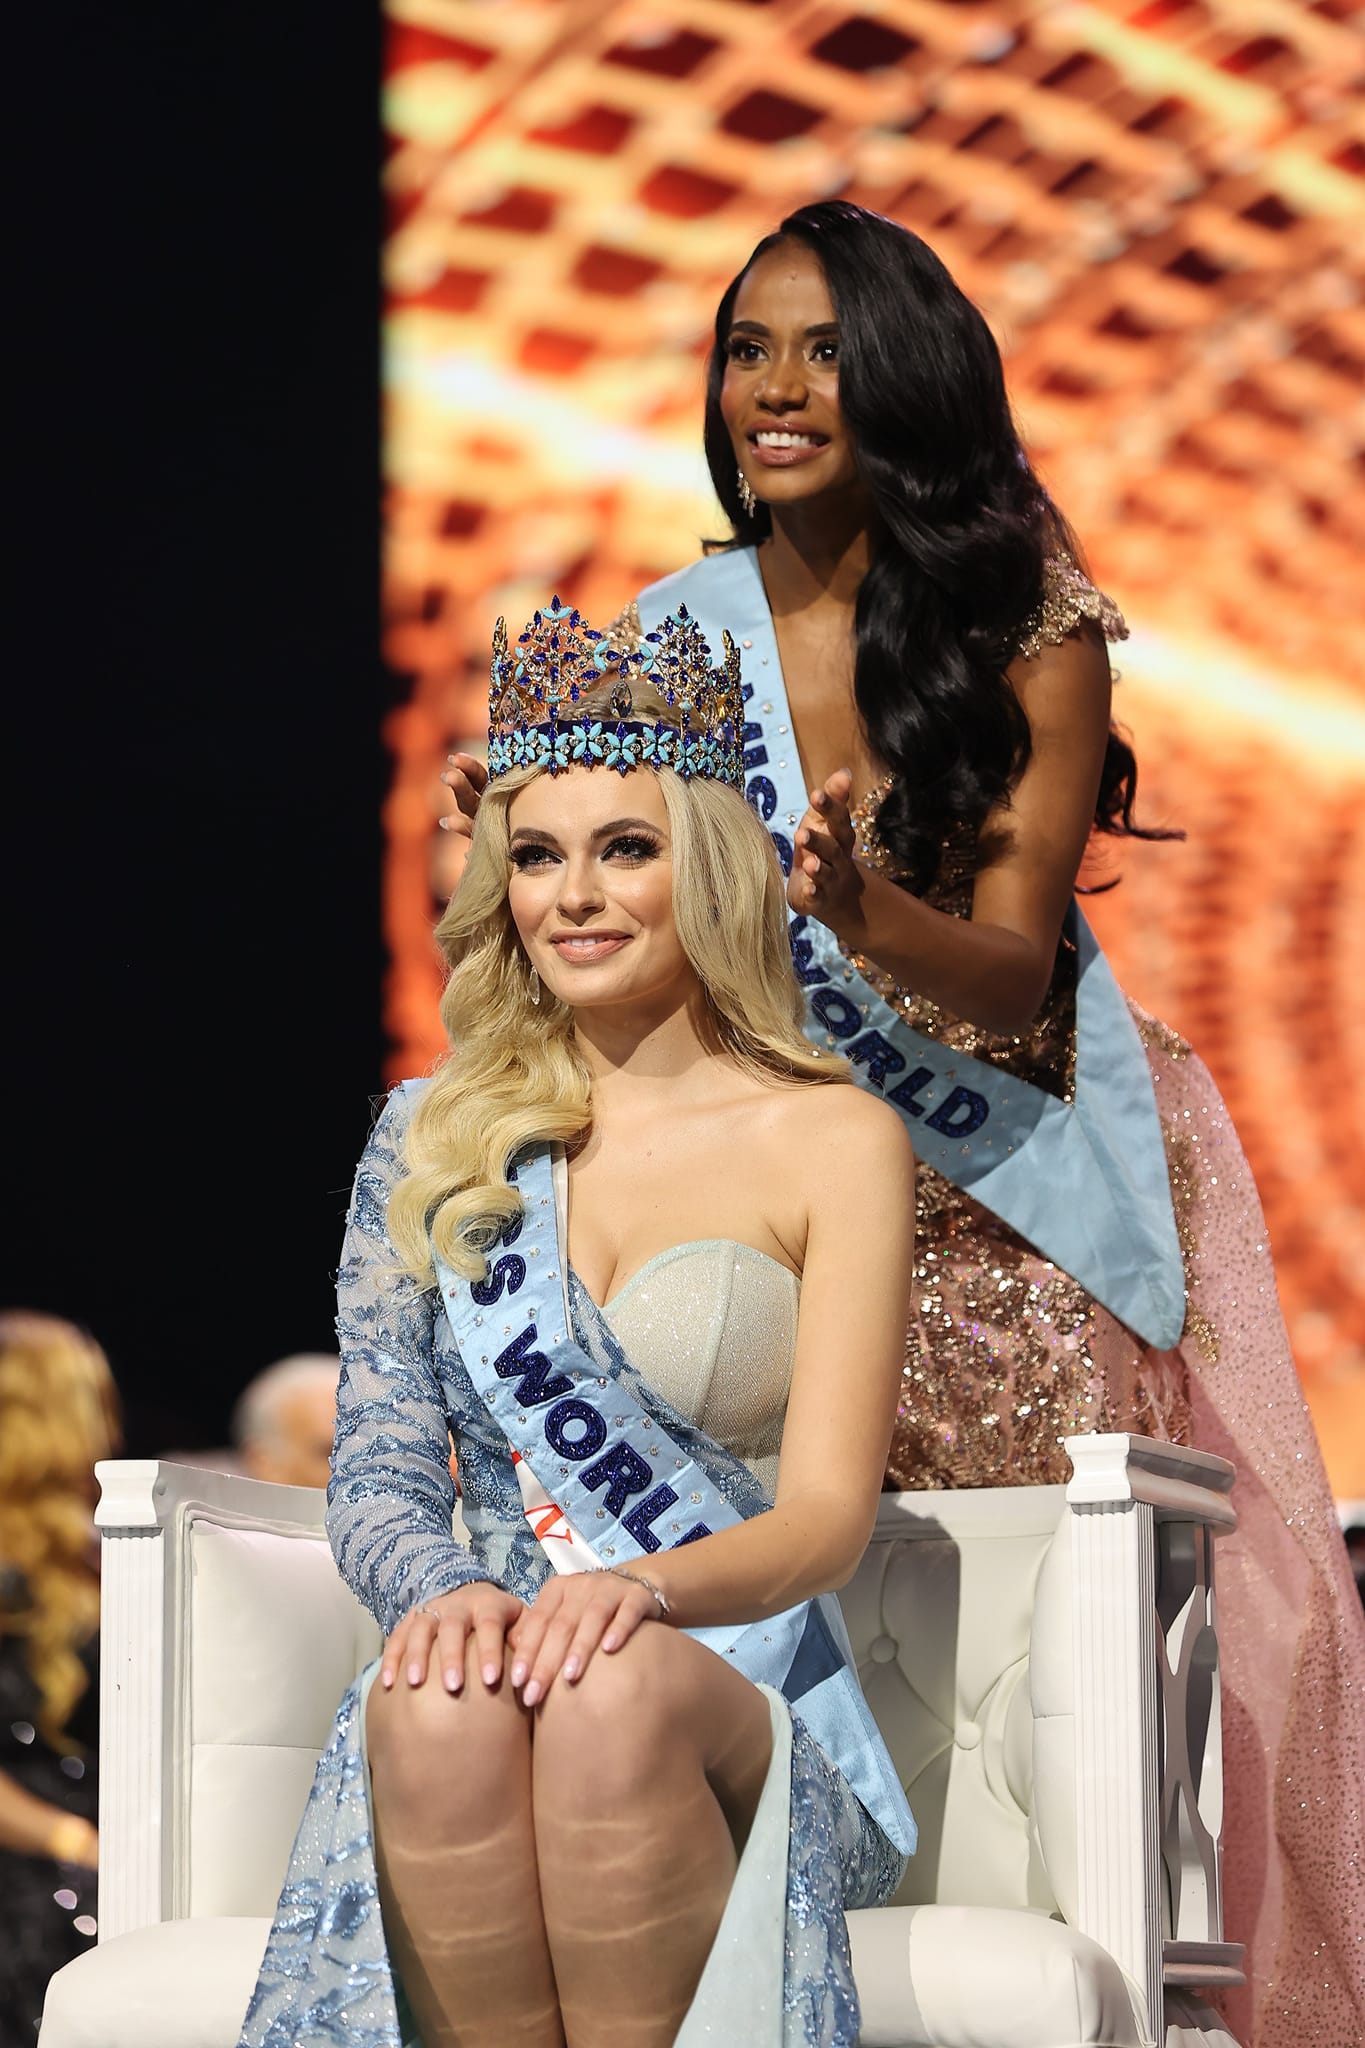 Vừa mới đăng quang, Miss World 2021 Karolina Bielawska bị soi lộ ảnh tình cảm với trai lạ - Ảnh 2